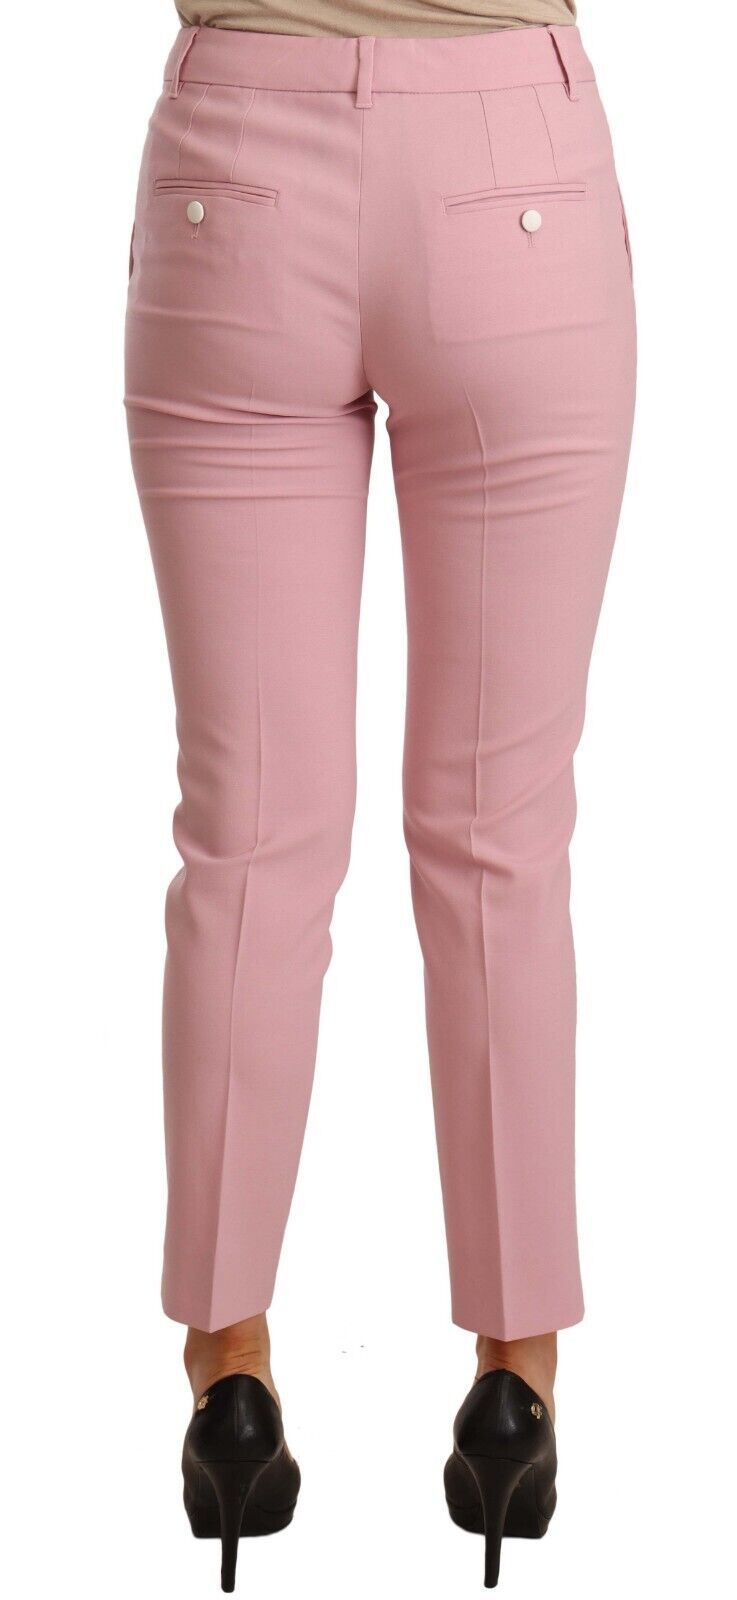 Dolce & Gabbana Pink Wool Stretch High Waist Trouser Women's Pants